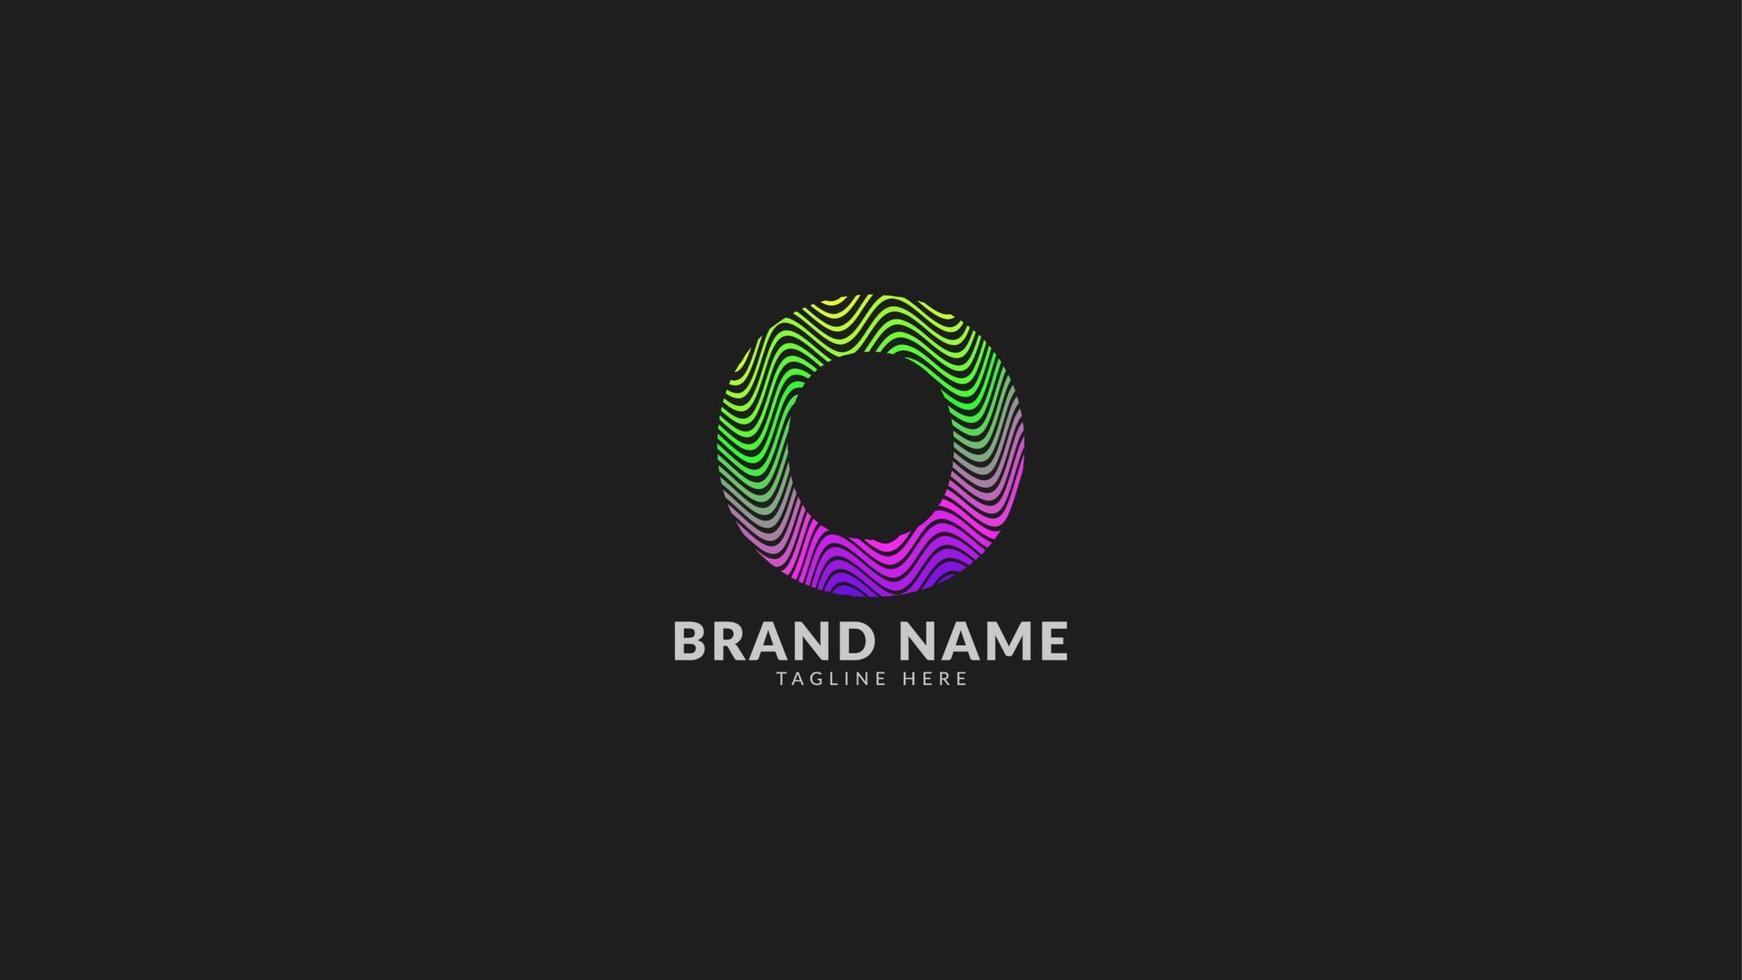 letra o logotipo colorido abstracto del arco iris ondulado para una marca de empresa creativa e innovadora. elemento de diseño de vector de impresión o web